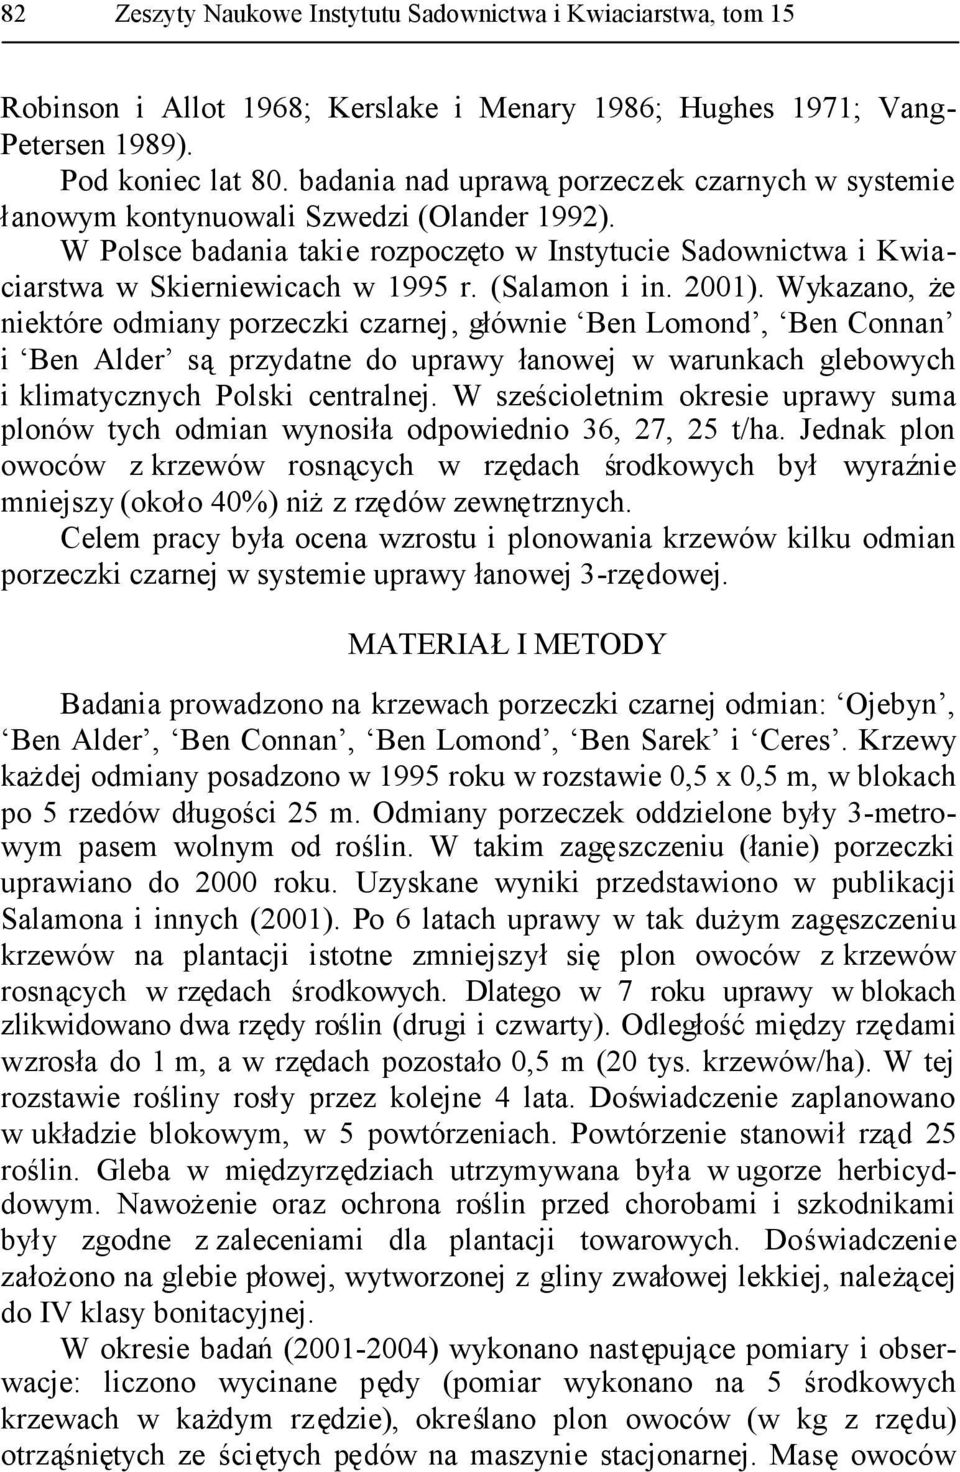 (Salamon i in. 2001). Wykazano, że niektóre odmiany porzeczki czarnej, głównie Ben Lomond, Ben Connan i Ben Alder sąprzydatne do uprawy łanowej w warunkach glebowych i klimatycznych Polski centralnej.